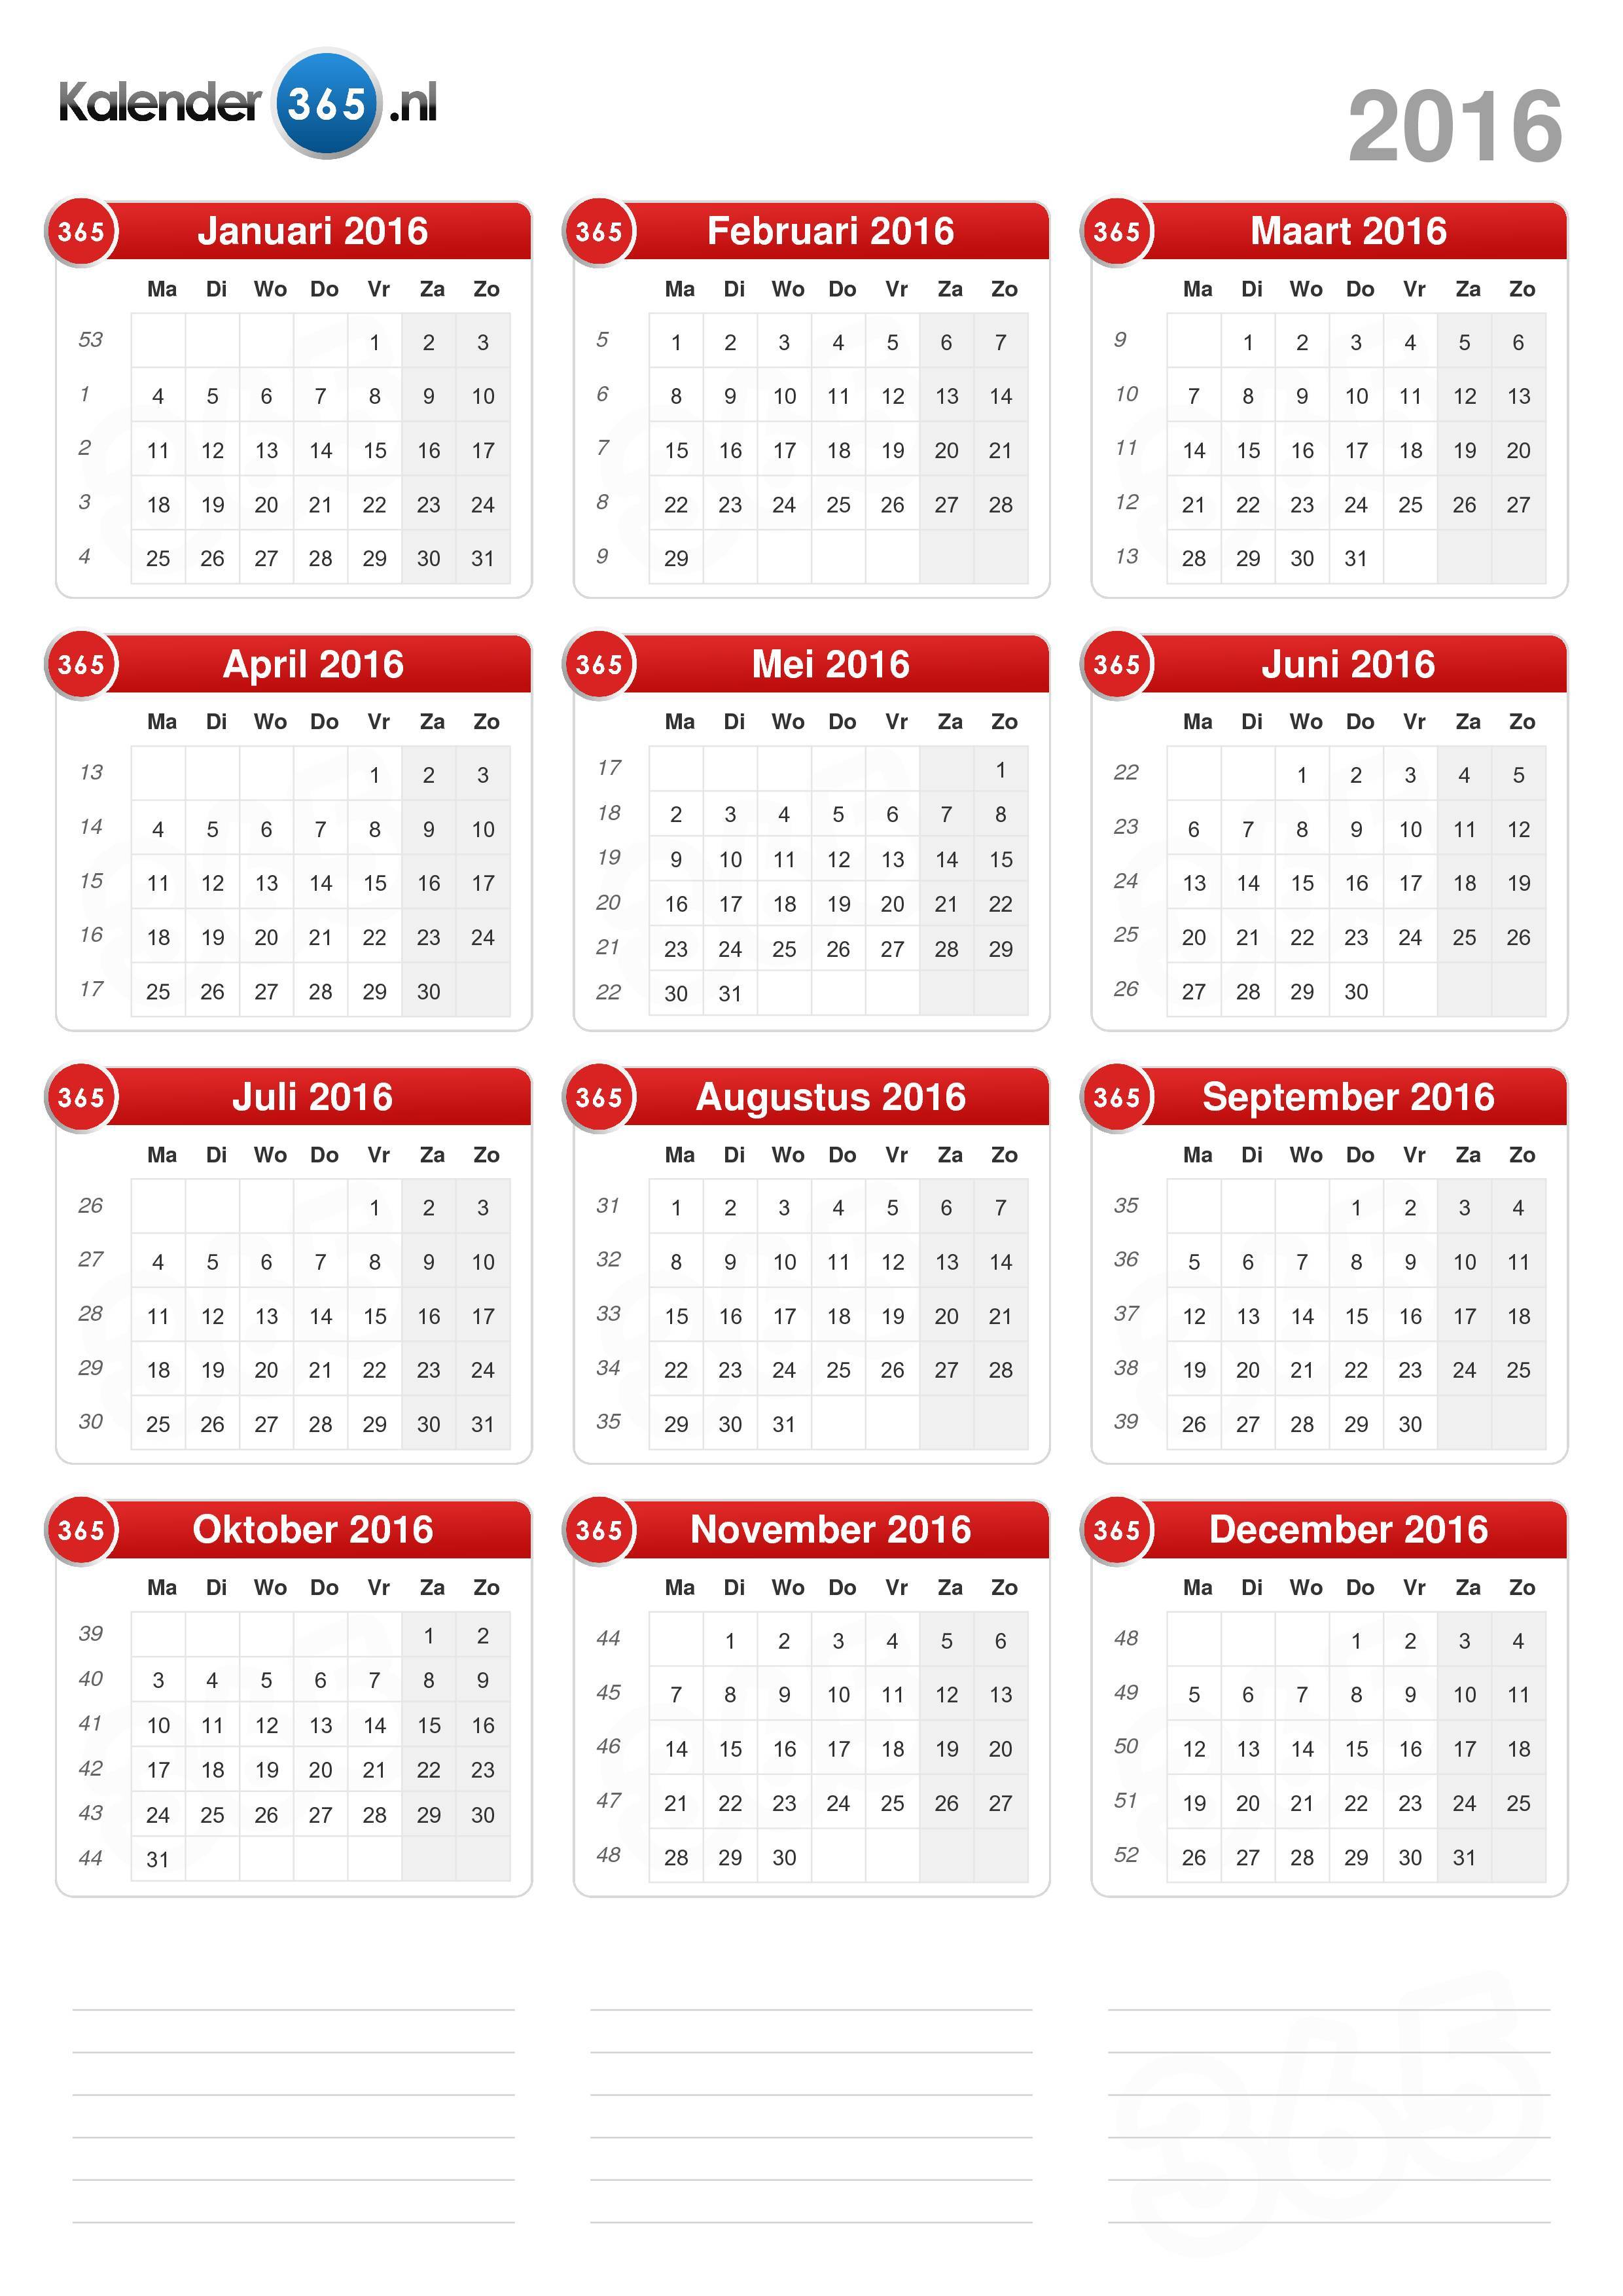 belasting majoor ga winkelen Kalender 2016